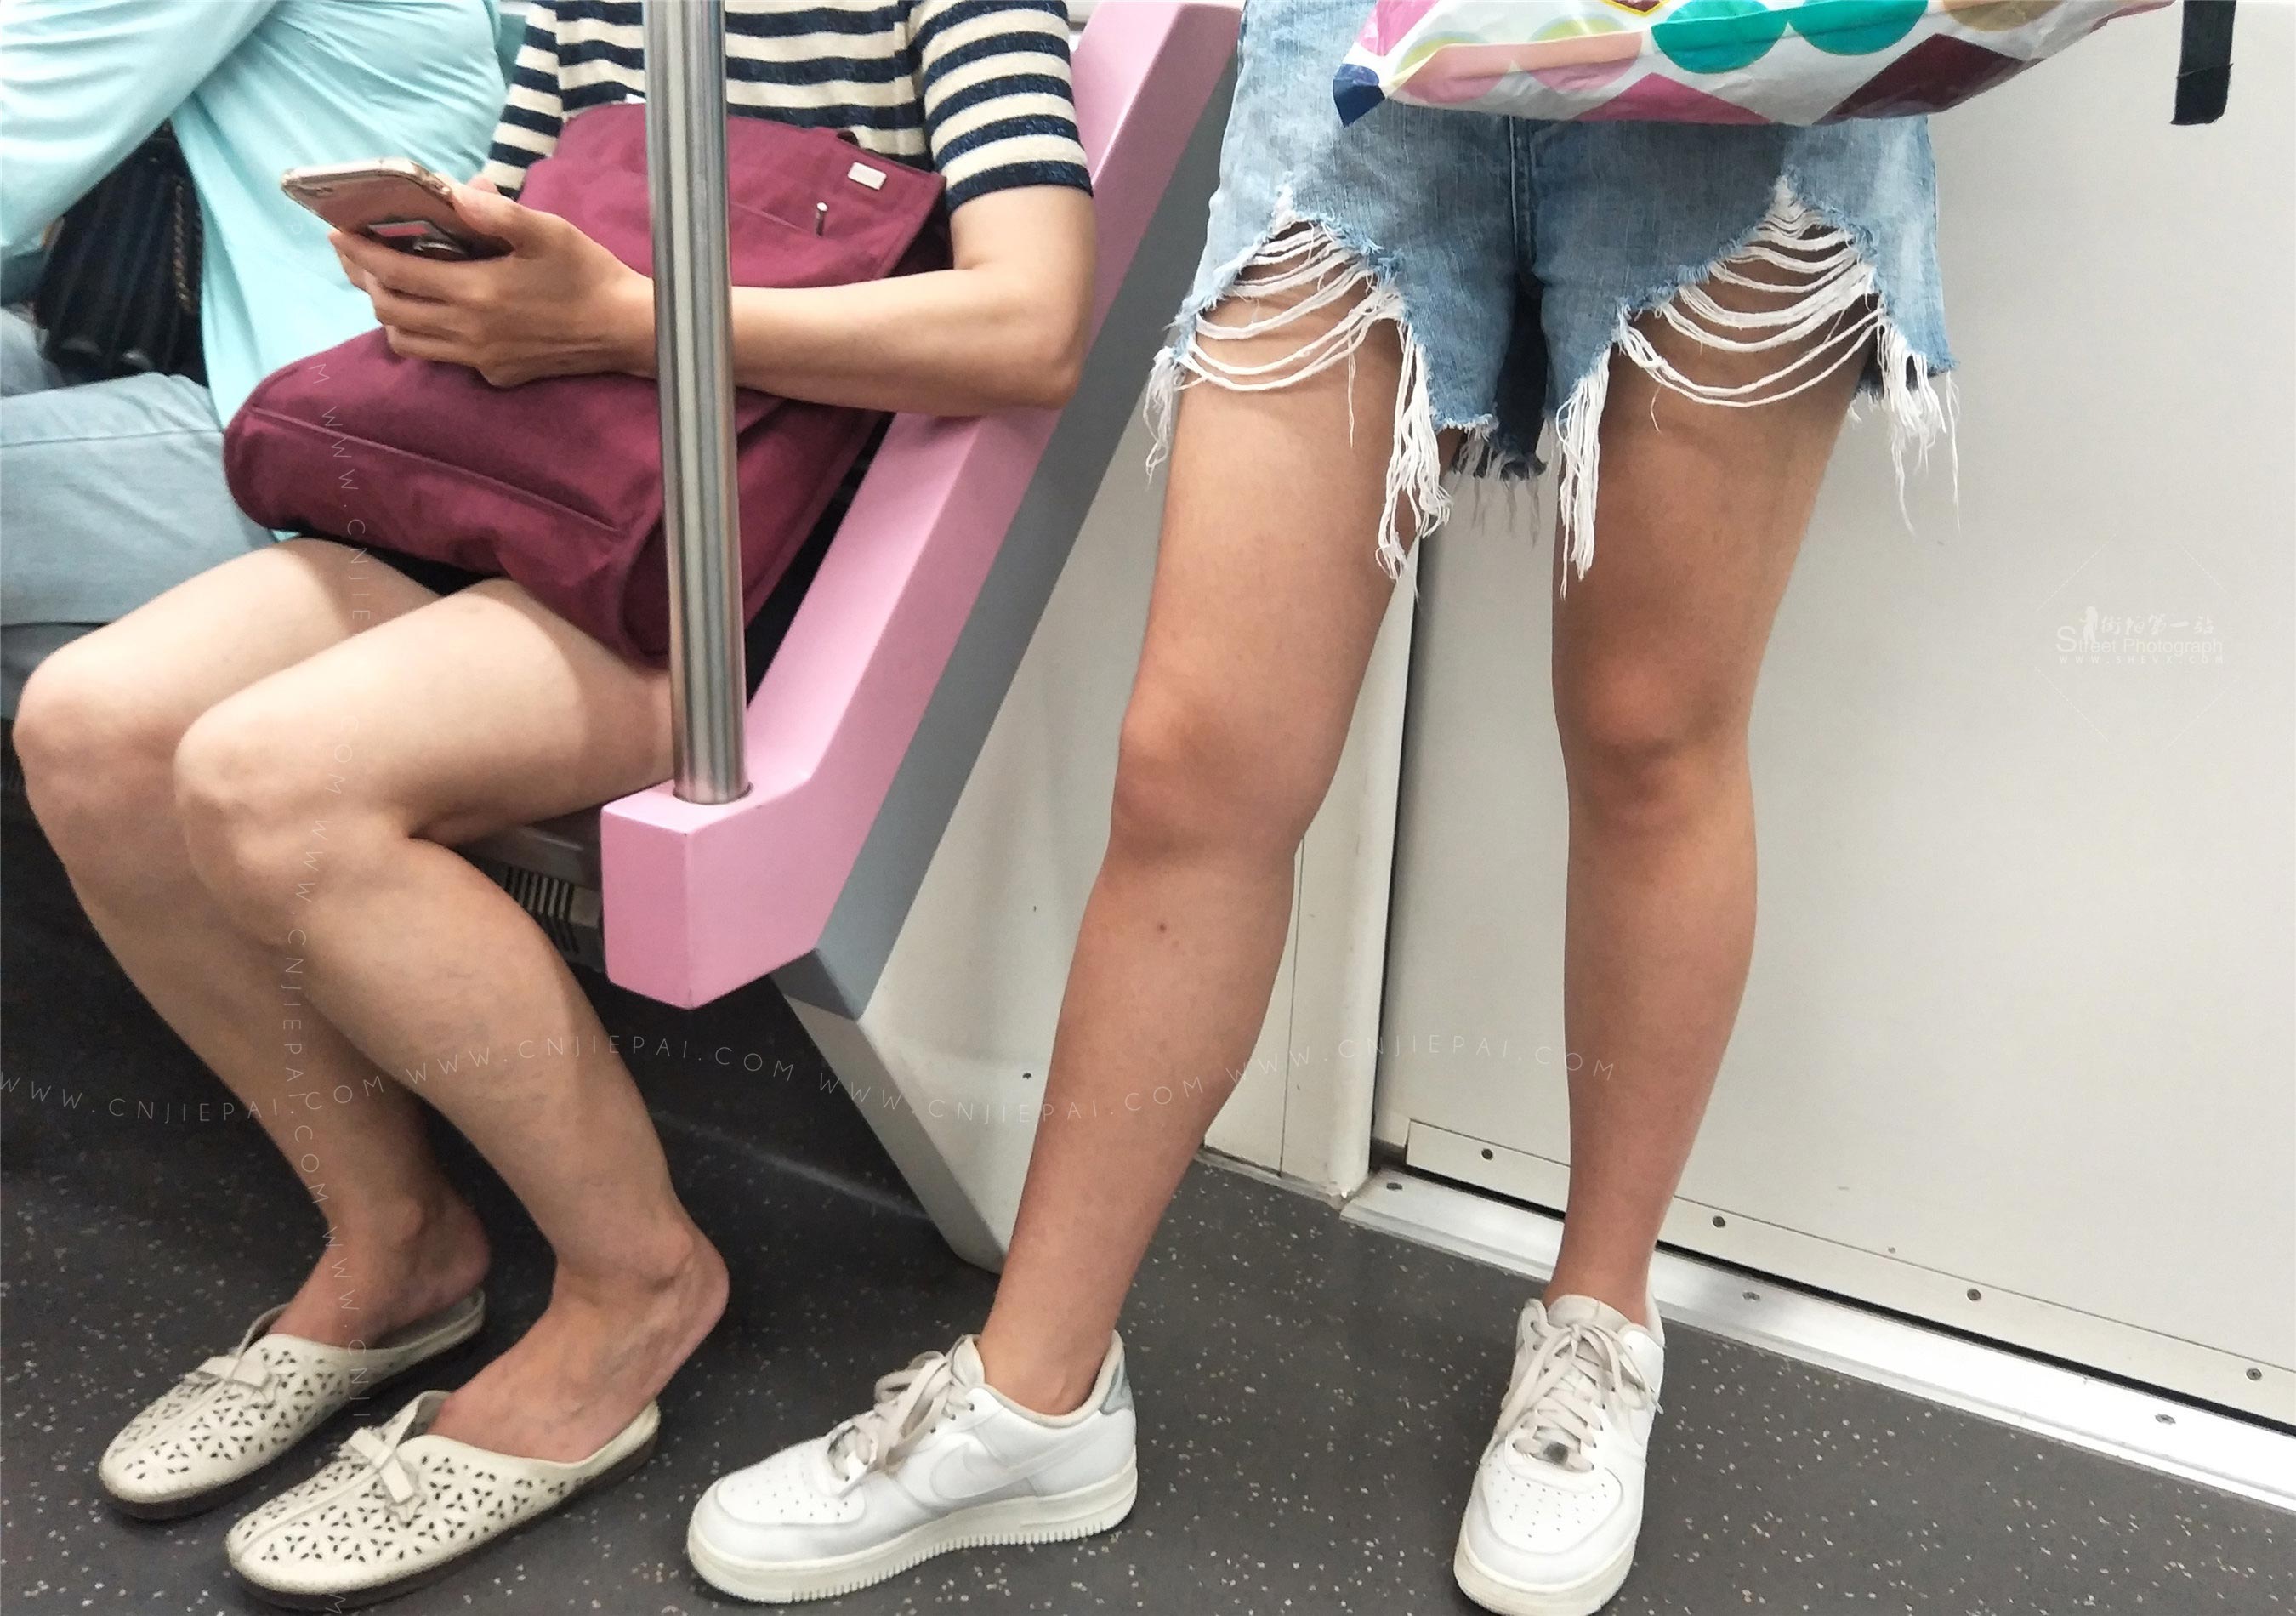 地铁上的热裤豹纹上衣长发美女 图8